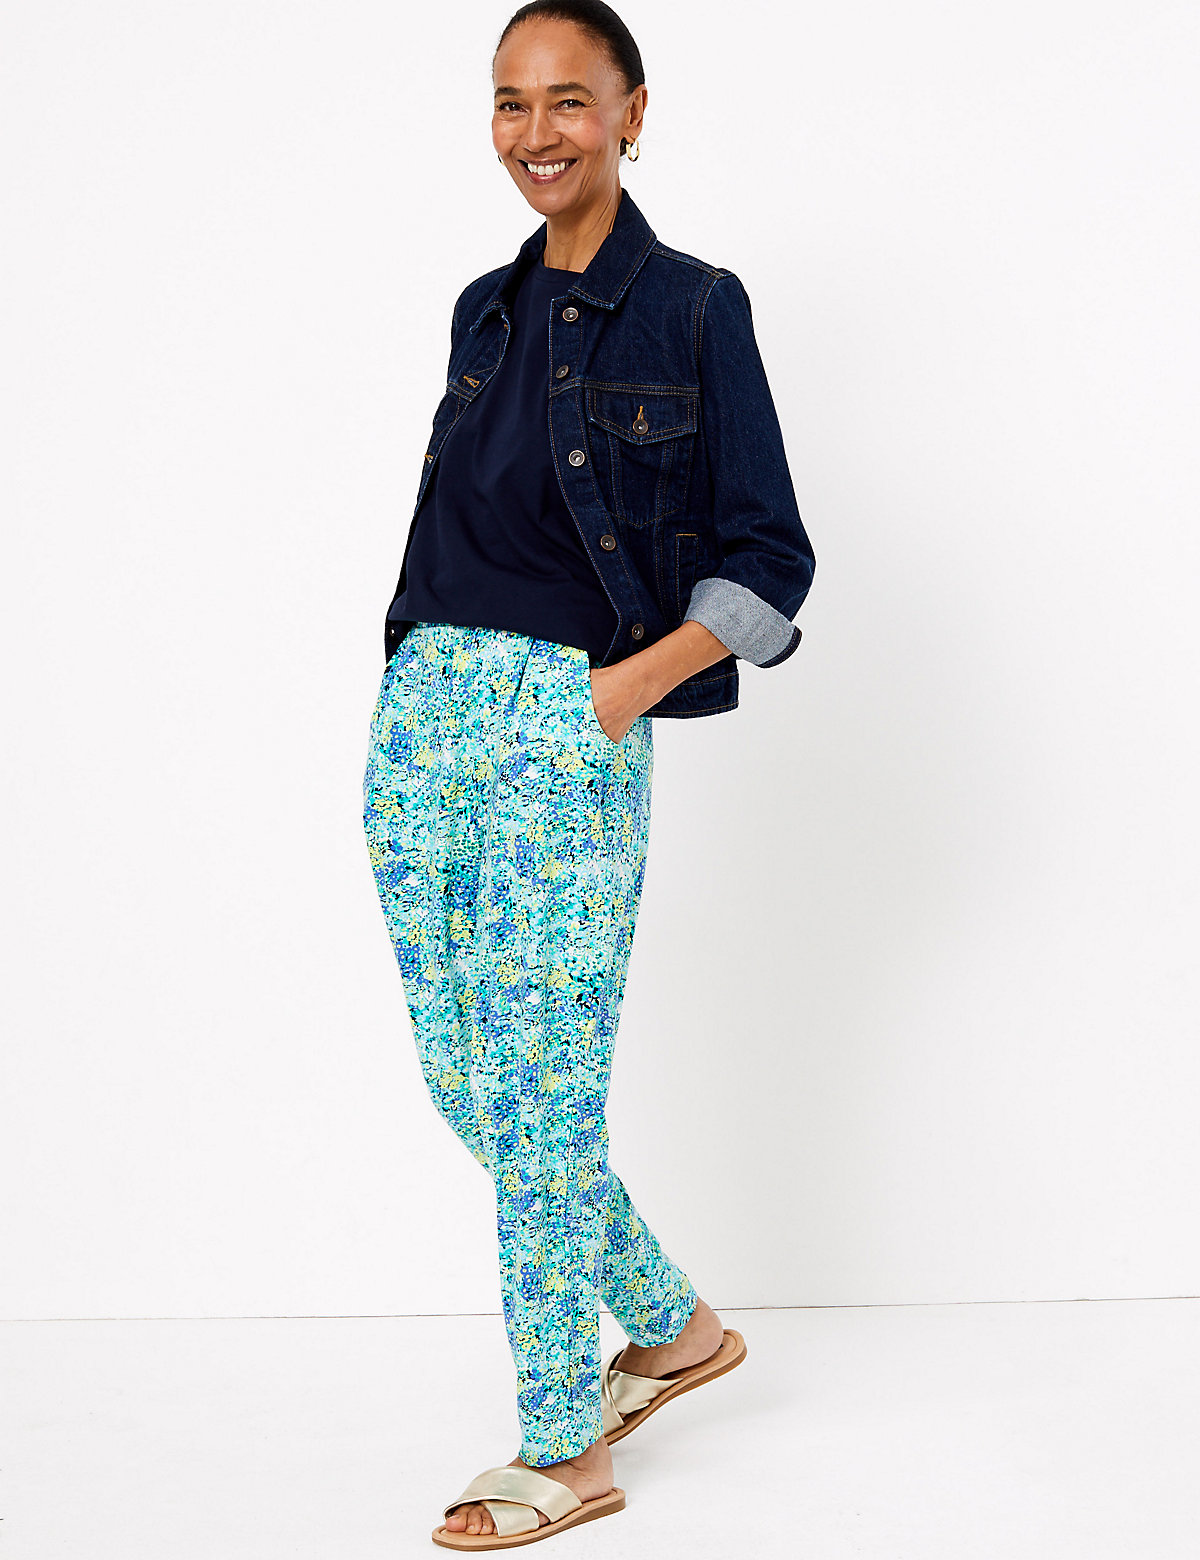 Женские брюки Marks & Spencer Трикотажные укороченные брюки StayNew™ с цветочным принтом, Marks&Spencer